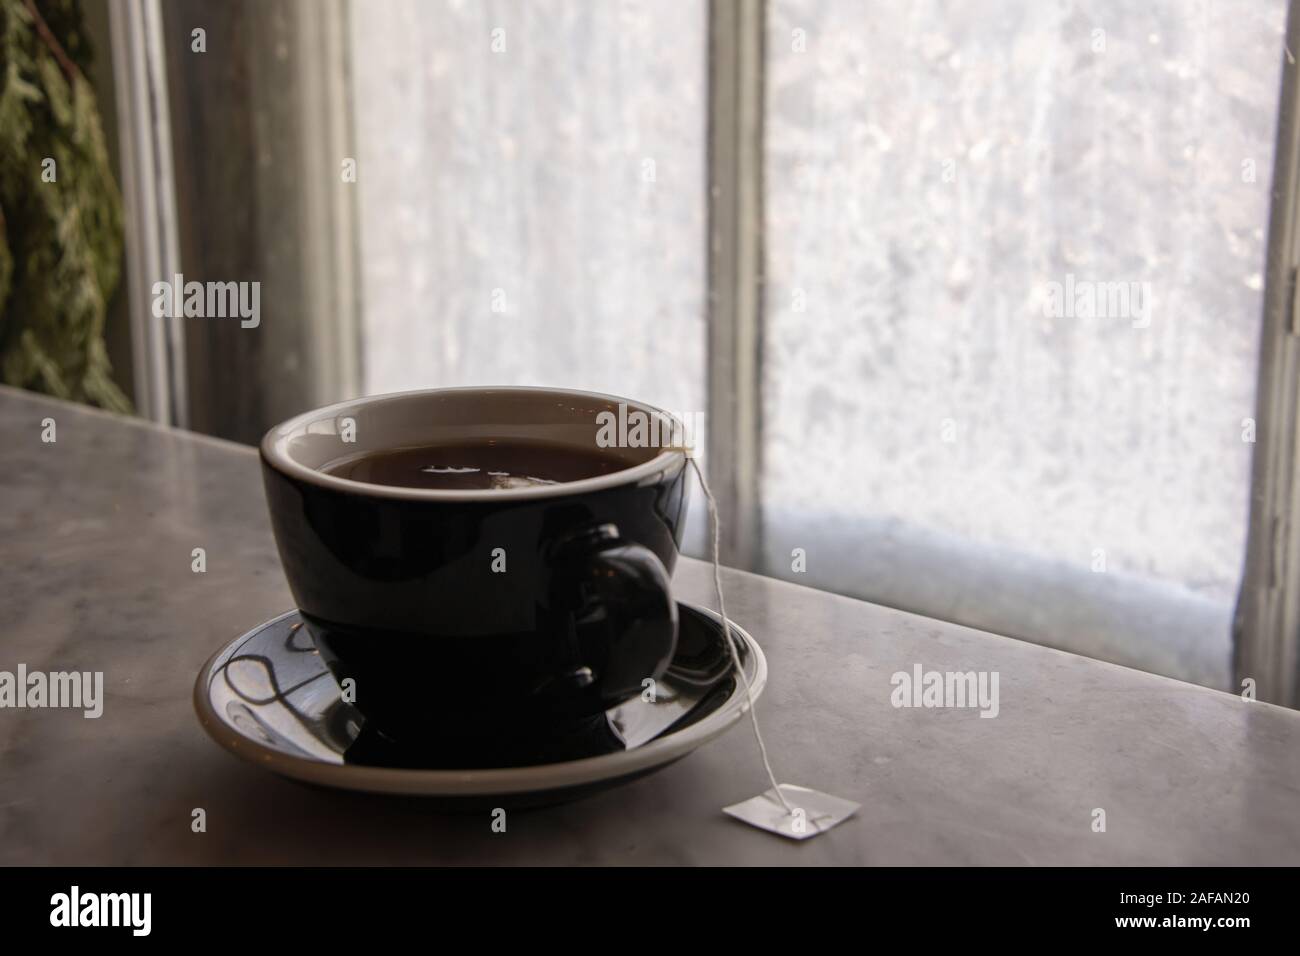 USA, Boston - Janvier 2018 - tasse de thé chaud sur un rebord de fenêtre en marbre devant un verre recouvert de glace de la fenêtre Banque D'Images